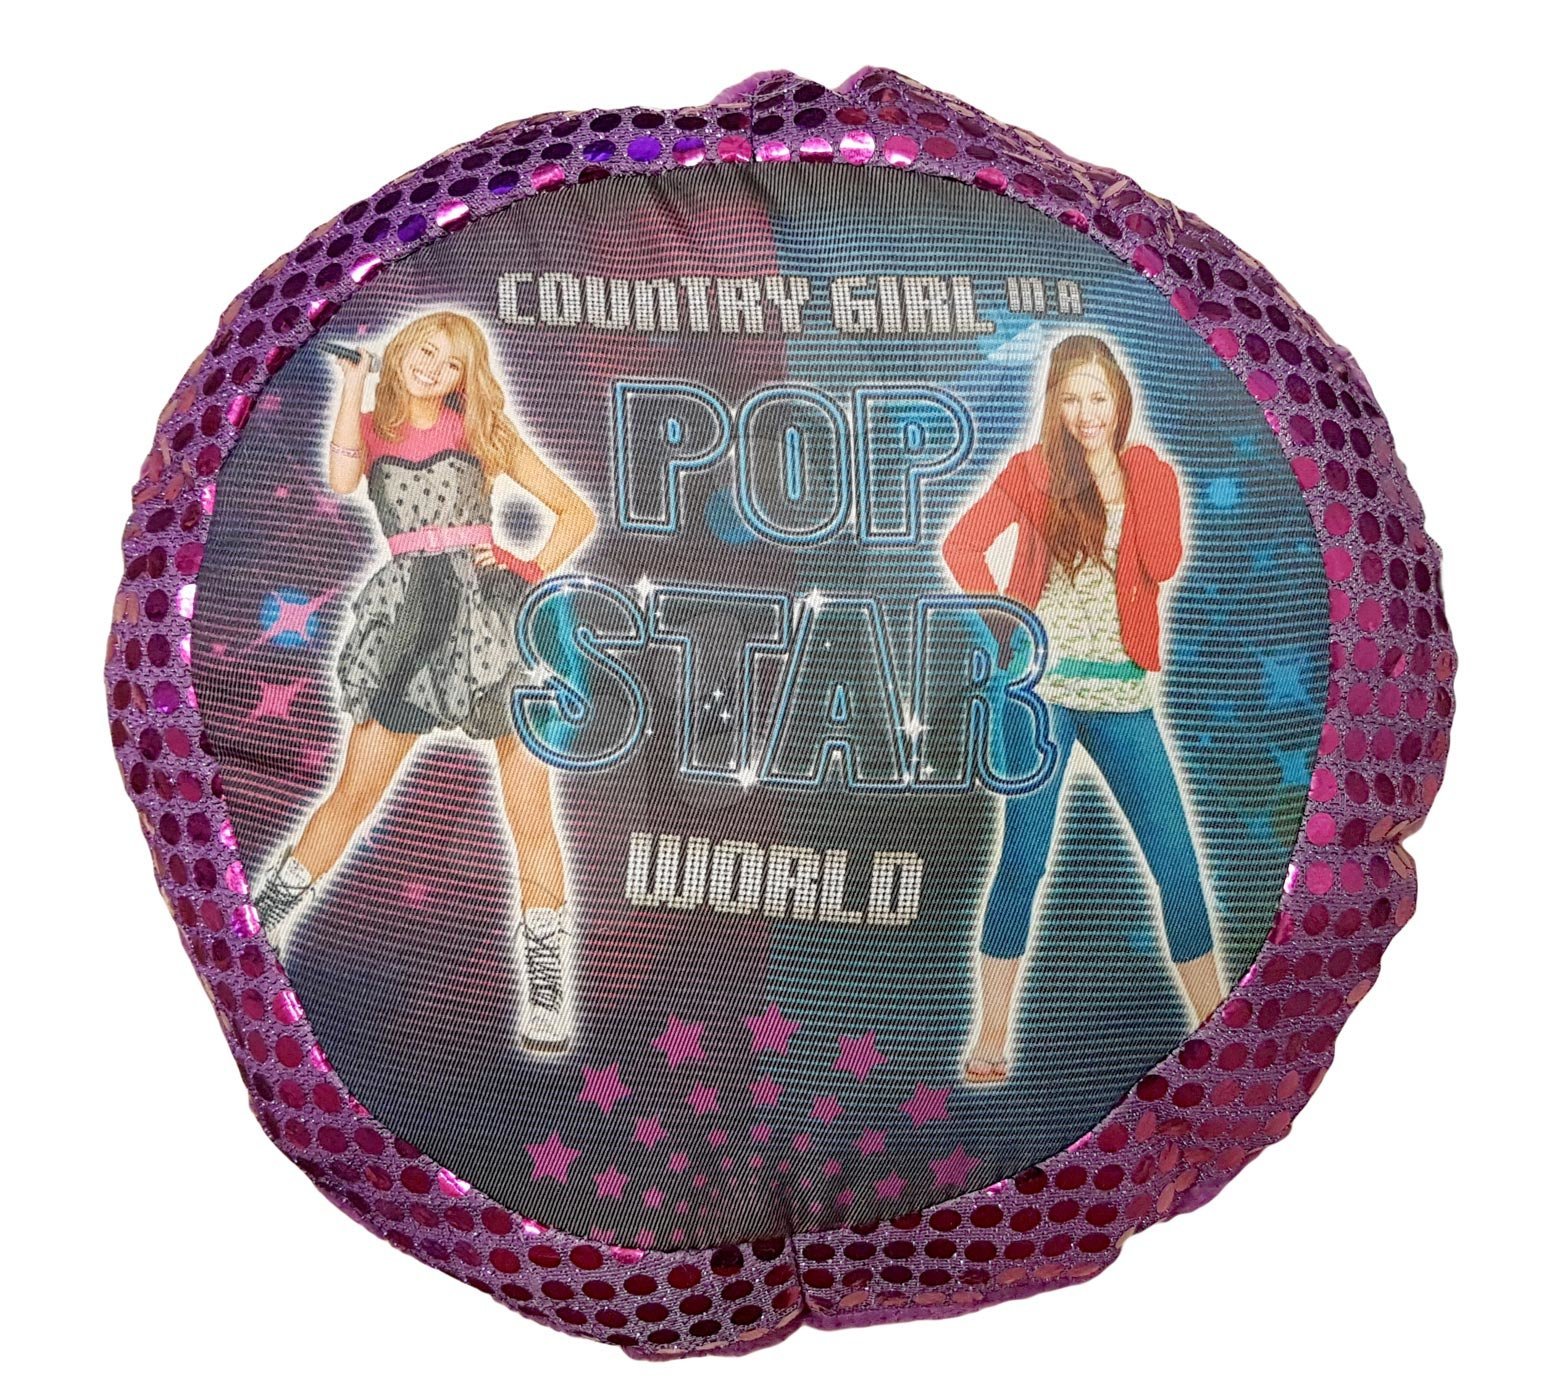 Plyšové polštáře - Polštář Pop Star Country Girl Ilanit fialová 25 cm průměr